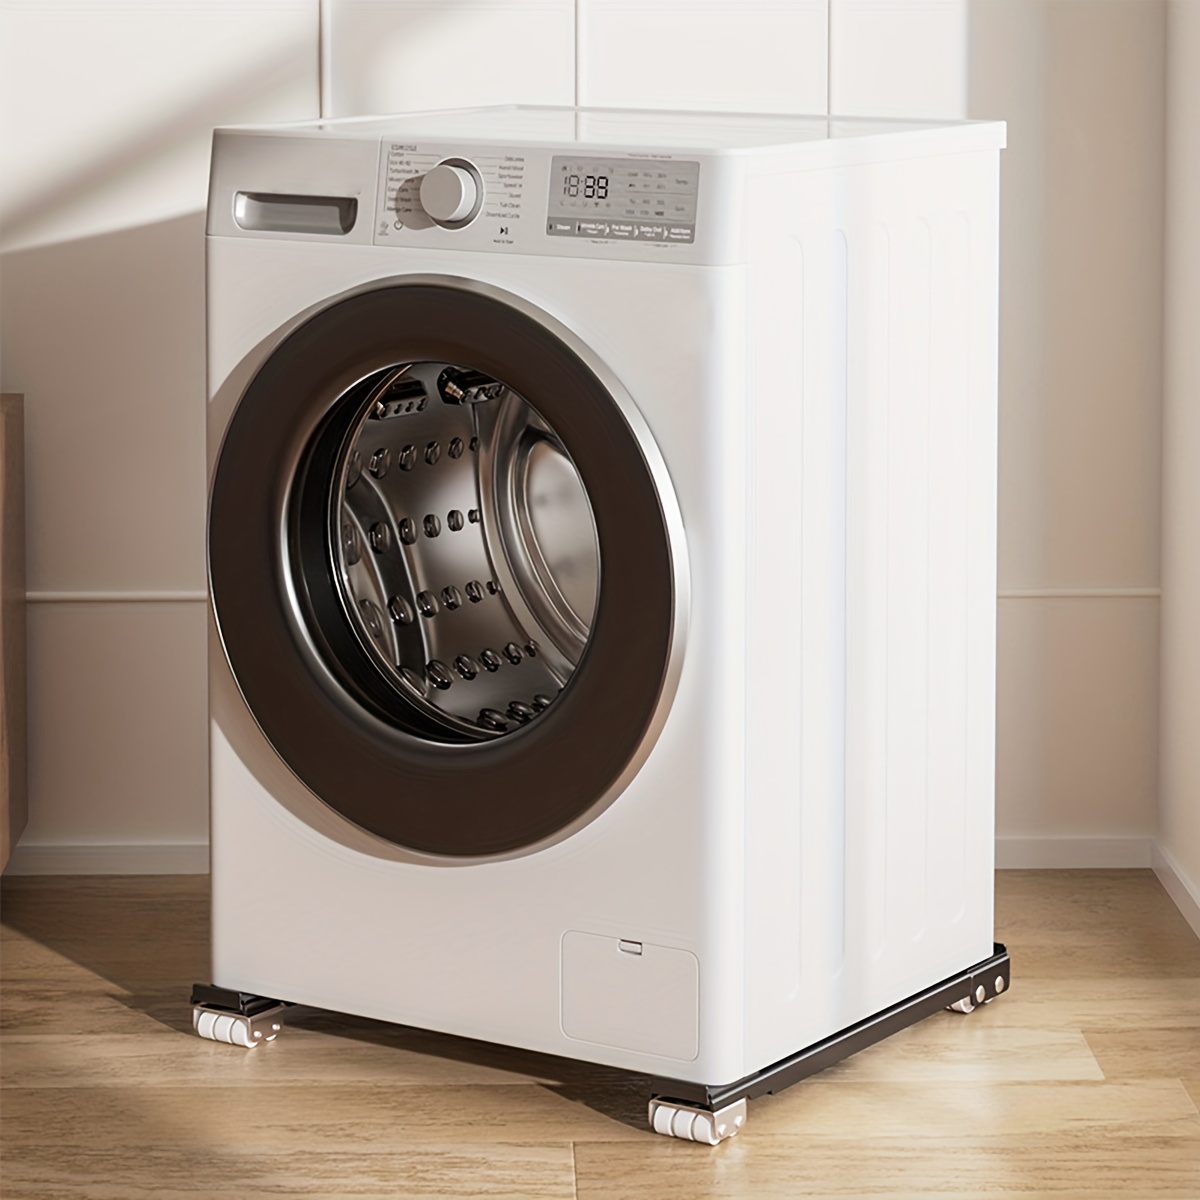 Base de soporte para lavadora, ruedas ajustables y extensibles para  electrodomésticos, carrito móvil de pedestal multifuncional para muebles,  para